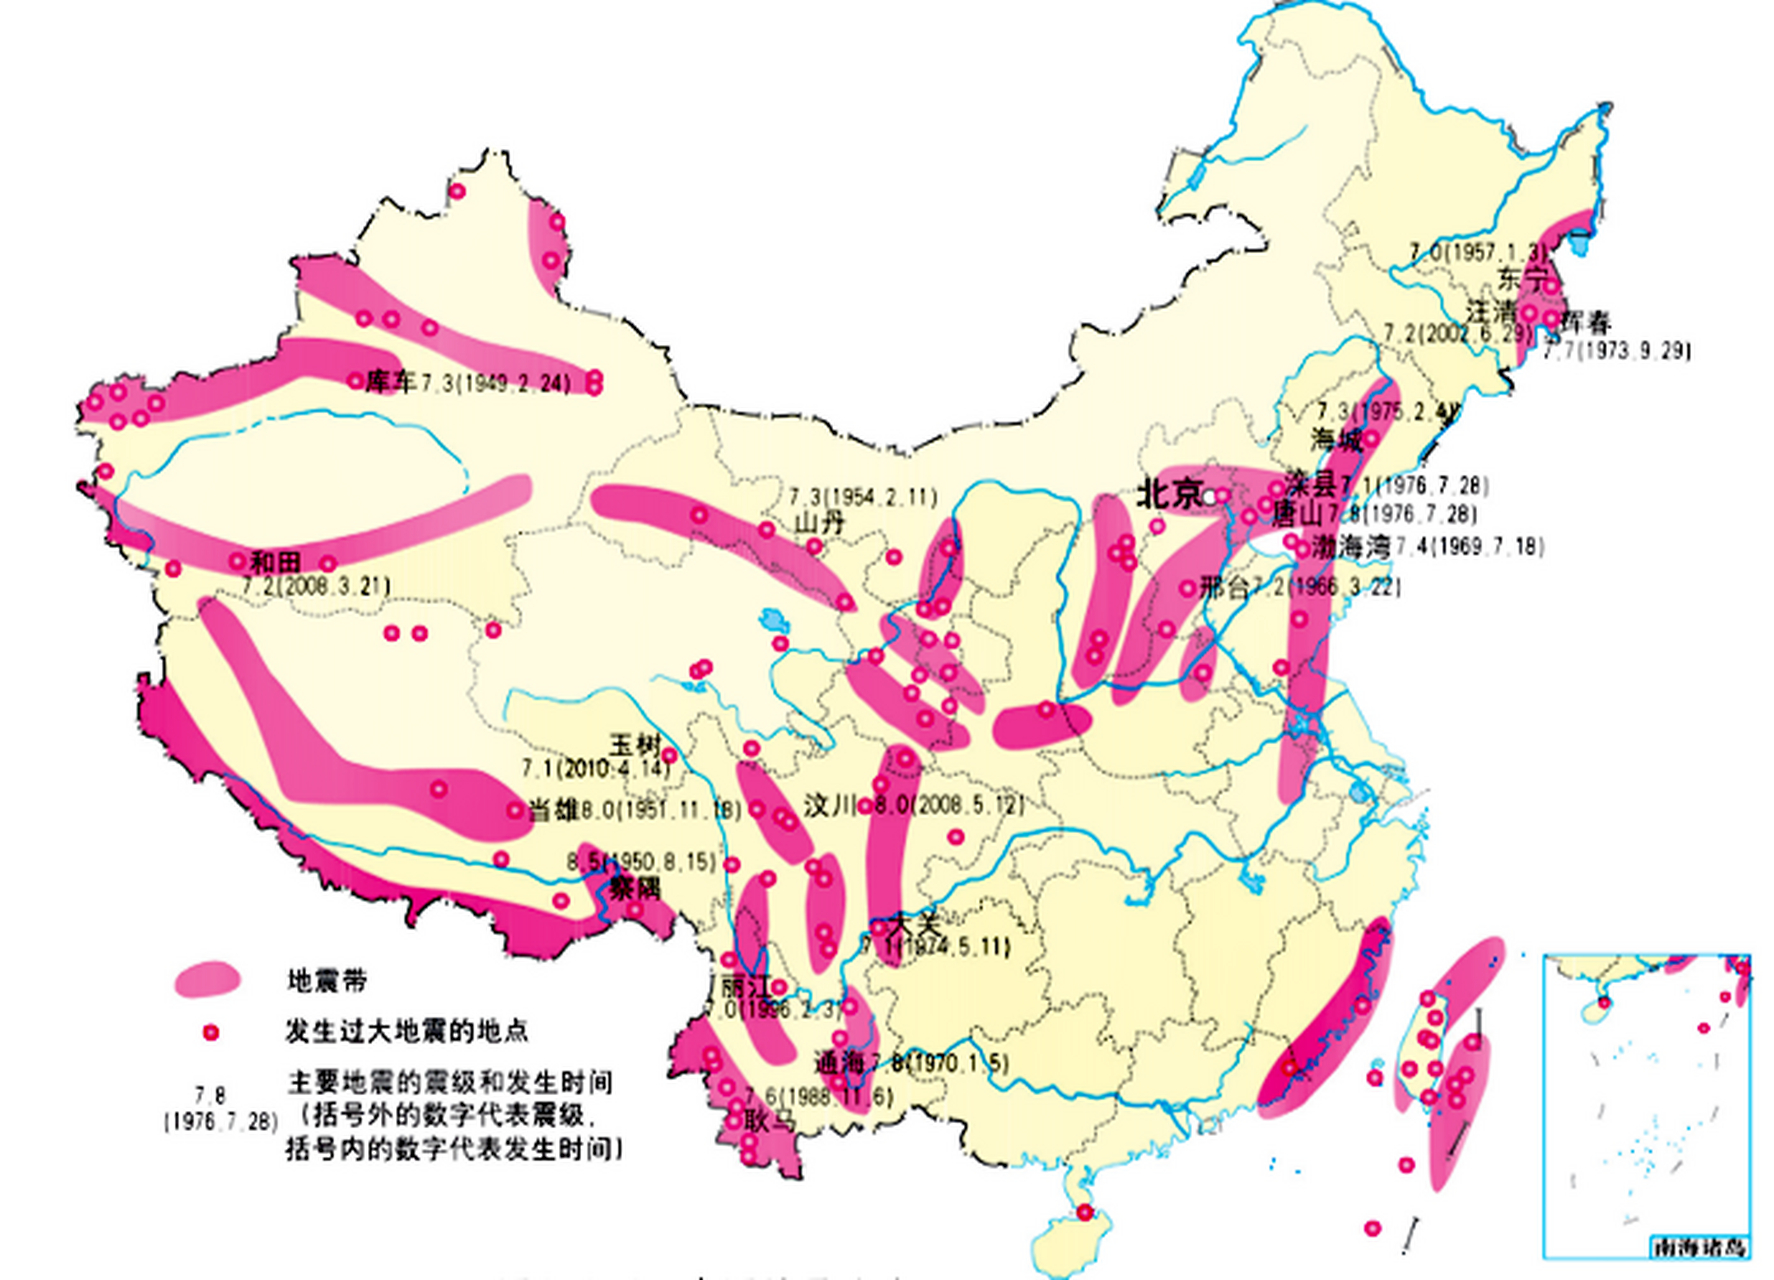 华北地震带是中国华北地区最大的地震带,东起渤海之滨的唐山地区,往西